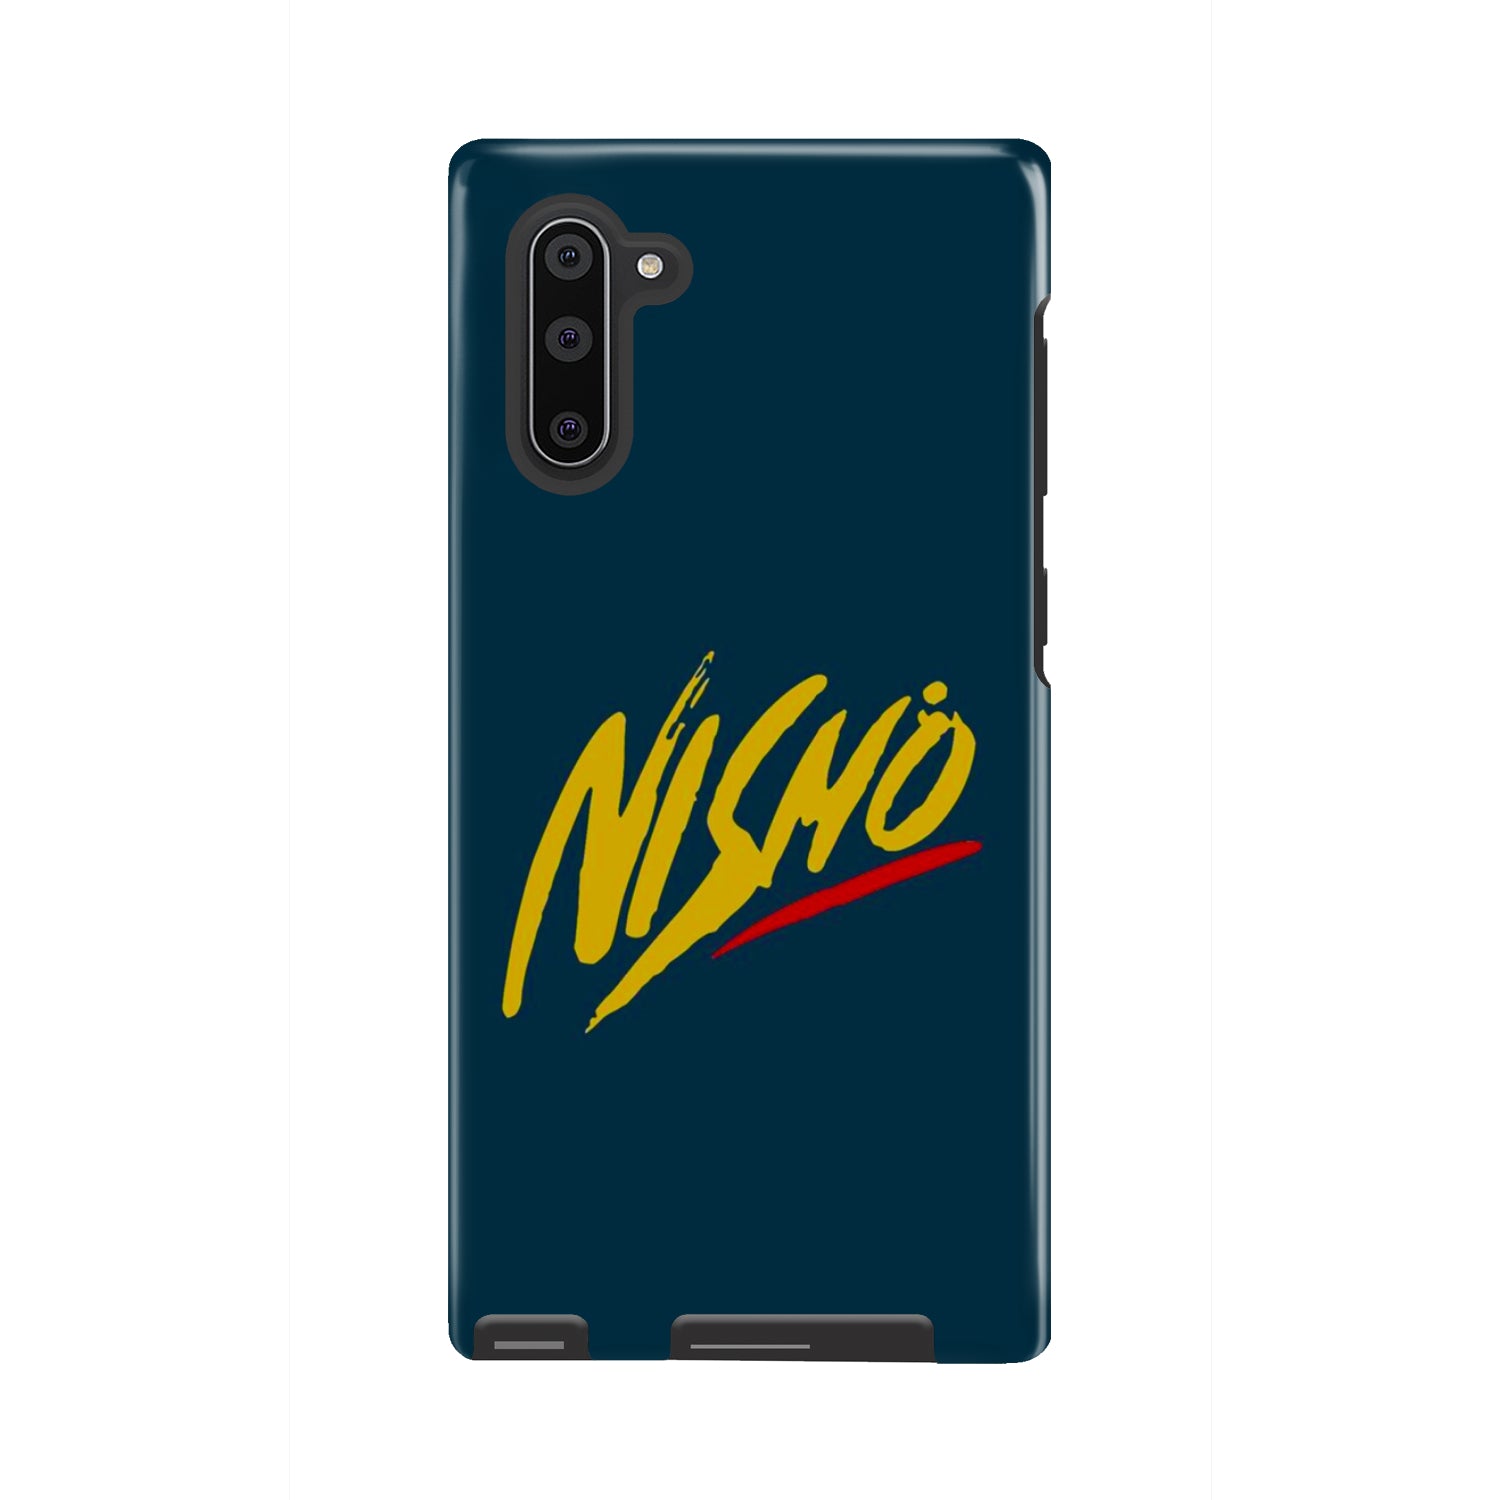 Nismo Phone Case